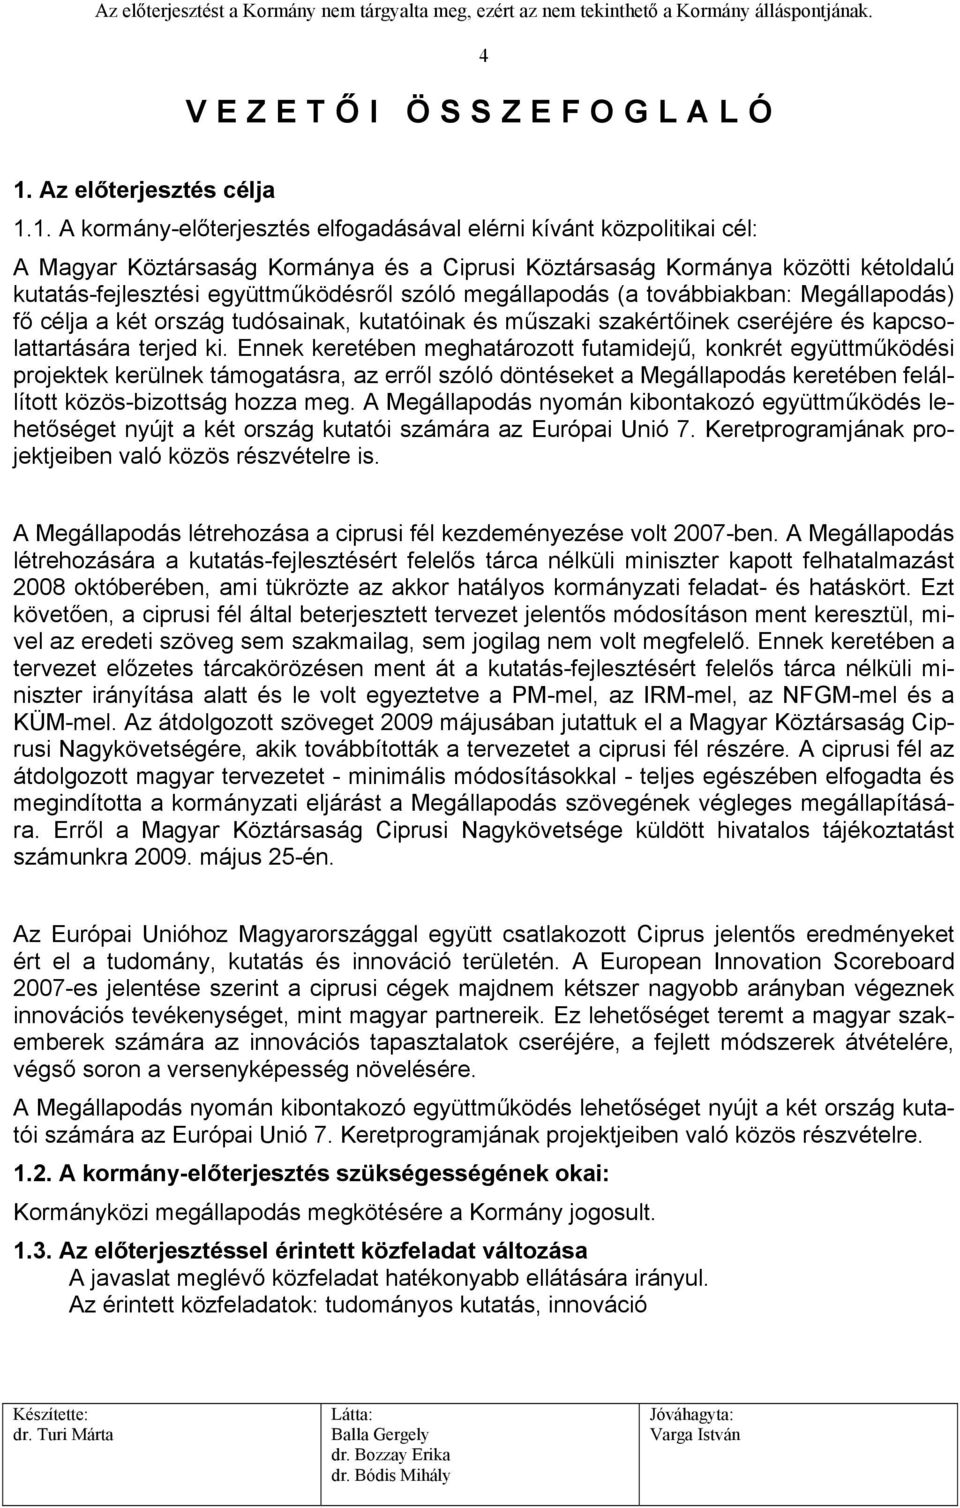 1. A kormány-előterjesztés elfogadásával elérni kívánt közpolitikai cél: A Magyar Köztársaság Kormánya és a Ciprusi Köztársaság Kormánya közötti kétoldalú kutatás-fejlesztési együttműködésről szóló